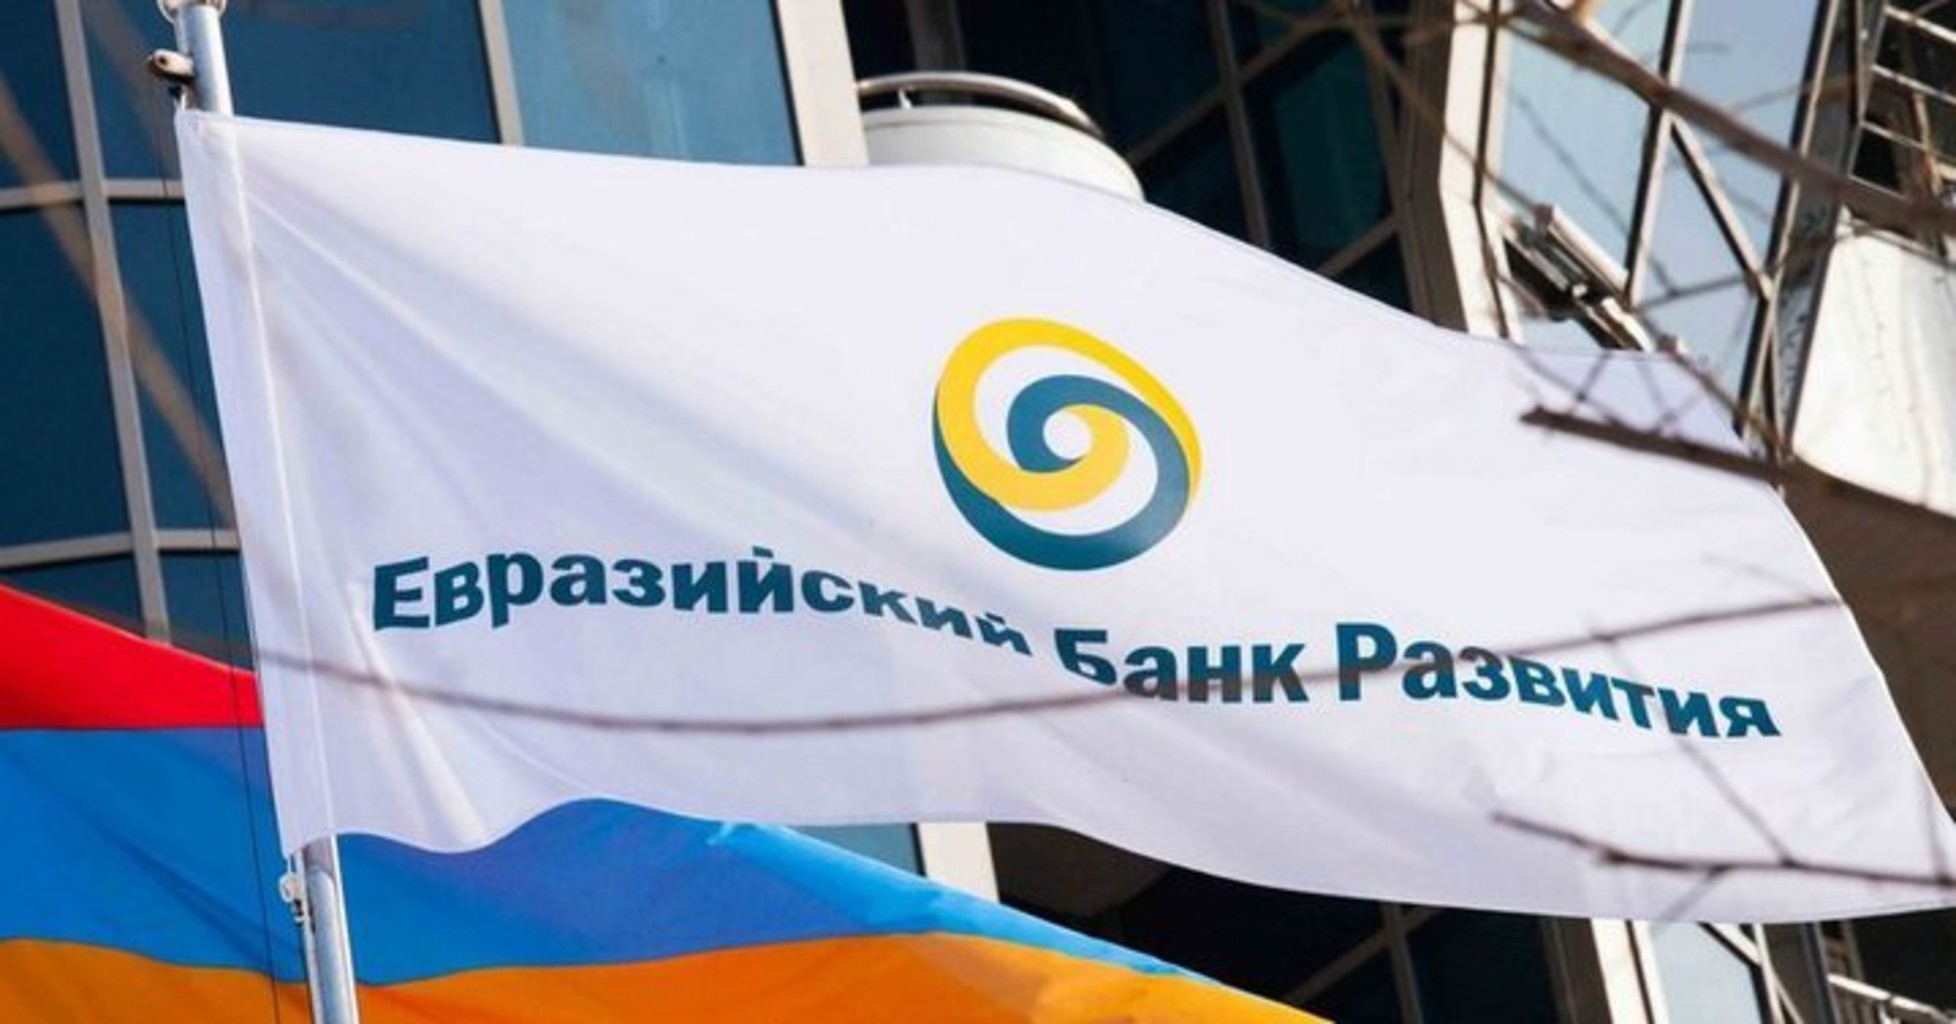 Экономика Казахстана в 2018 году  вырастет на 3,8% - ЕАБР